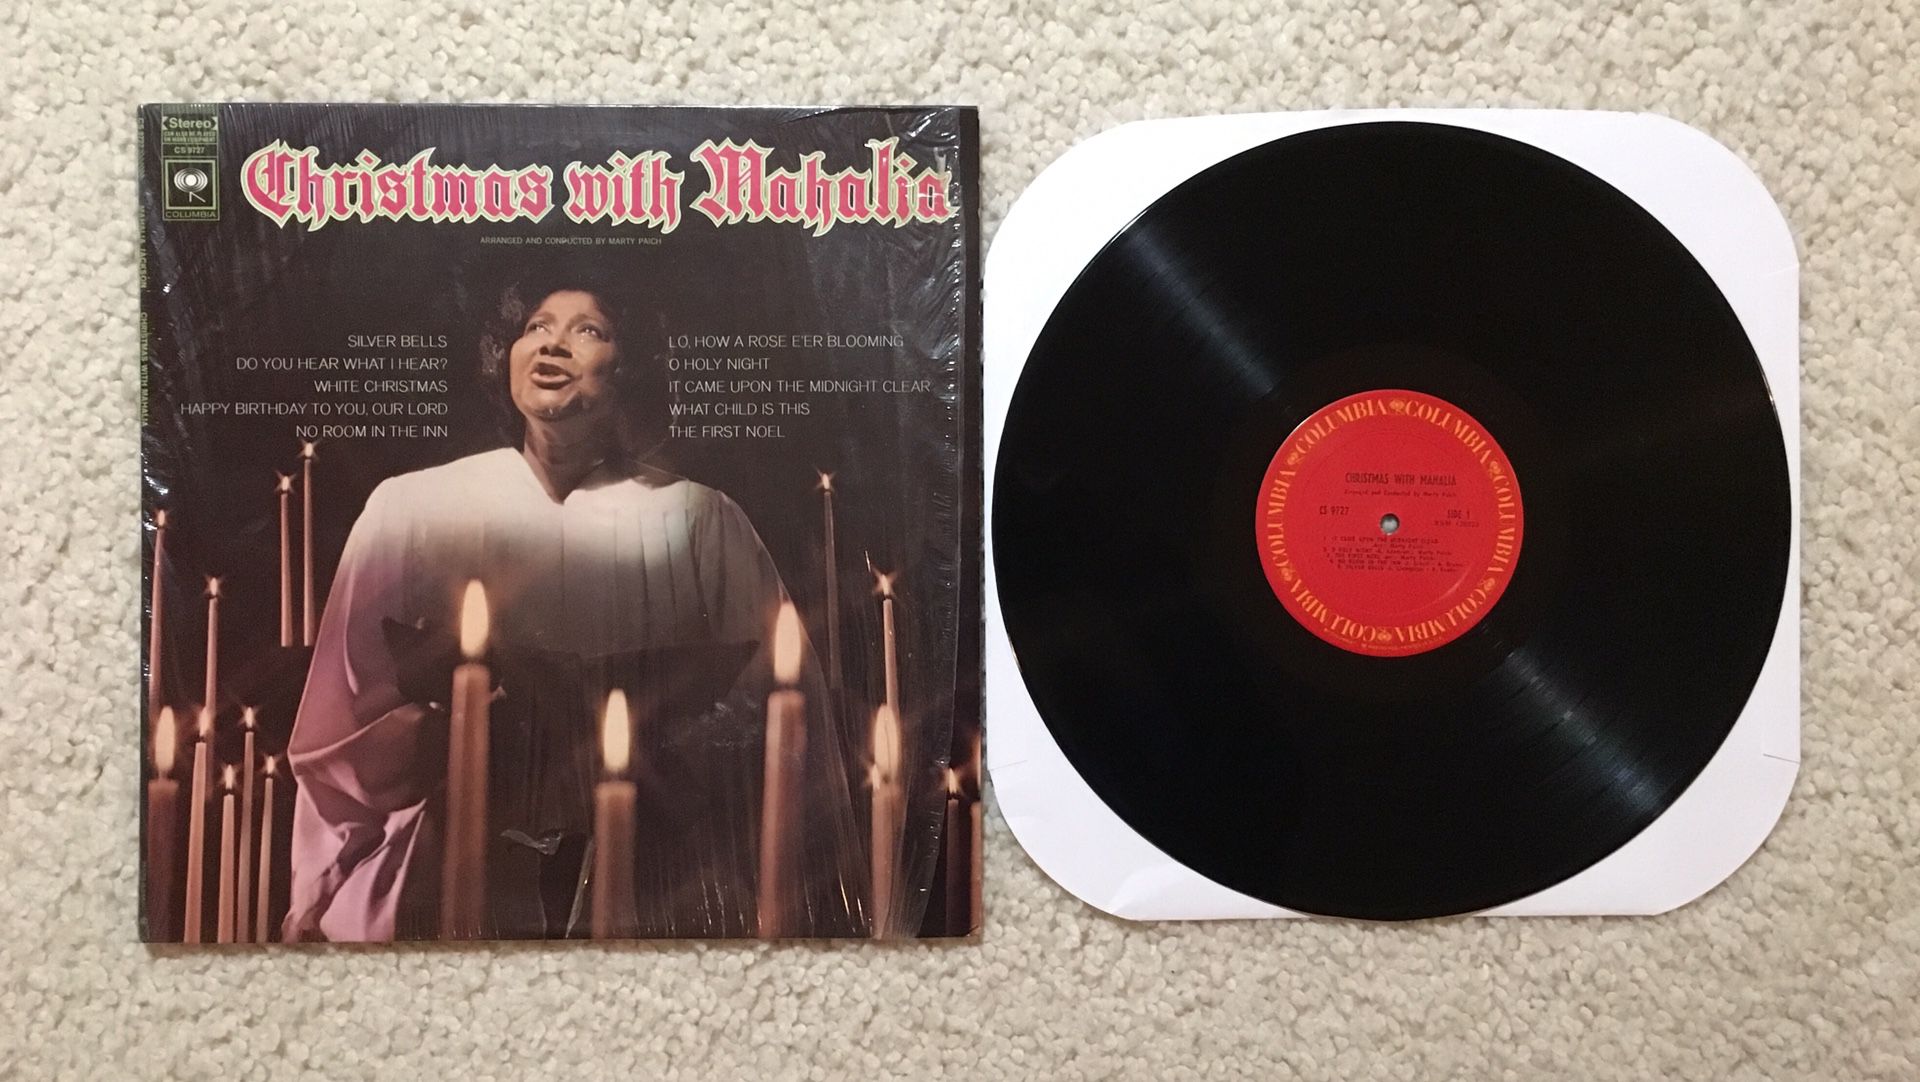 Mahalia Jackson “Christmas With Mahalia” vinyl lp 1970s Columbia Records -1Hmatrix still in shrink like new copy Gospel Christmas